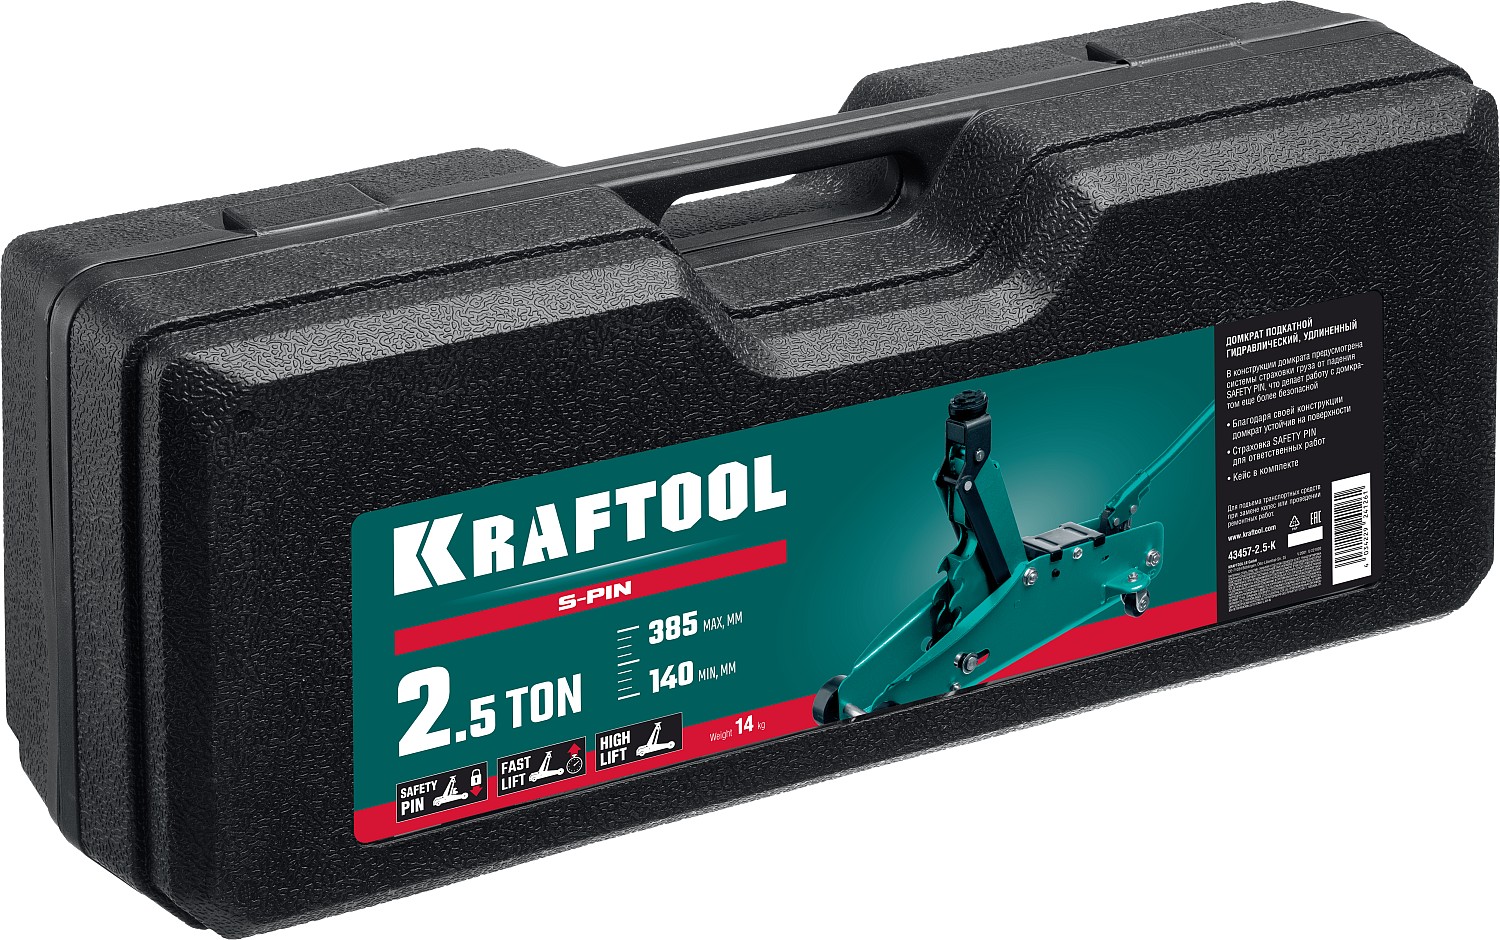 KRAFTOOL S-PIN, в кейсе 2.5 т, 140 - 385 мм, с увеличенным подъемом и фиксатором, подкатной домкрат (43457-2.5-K)